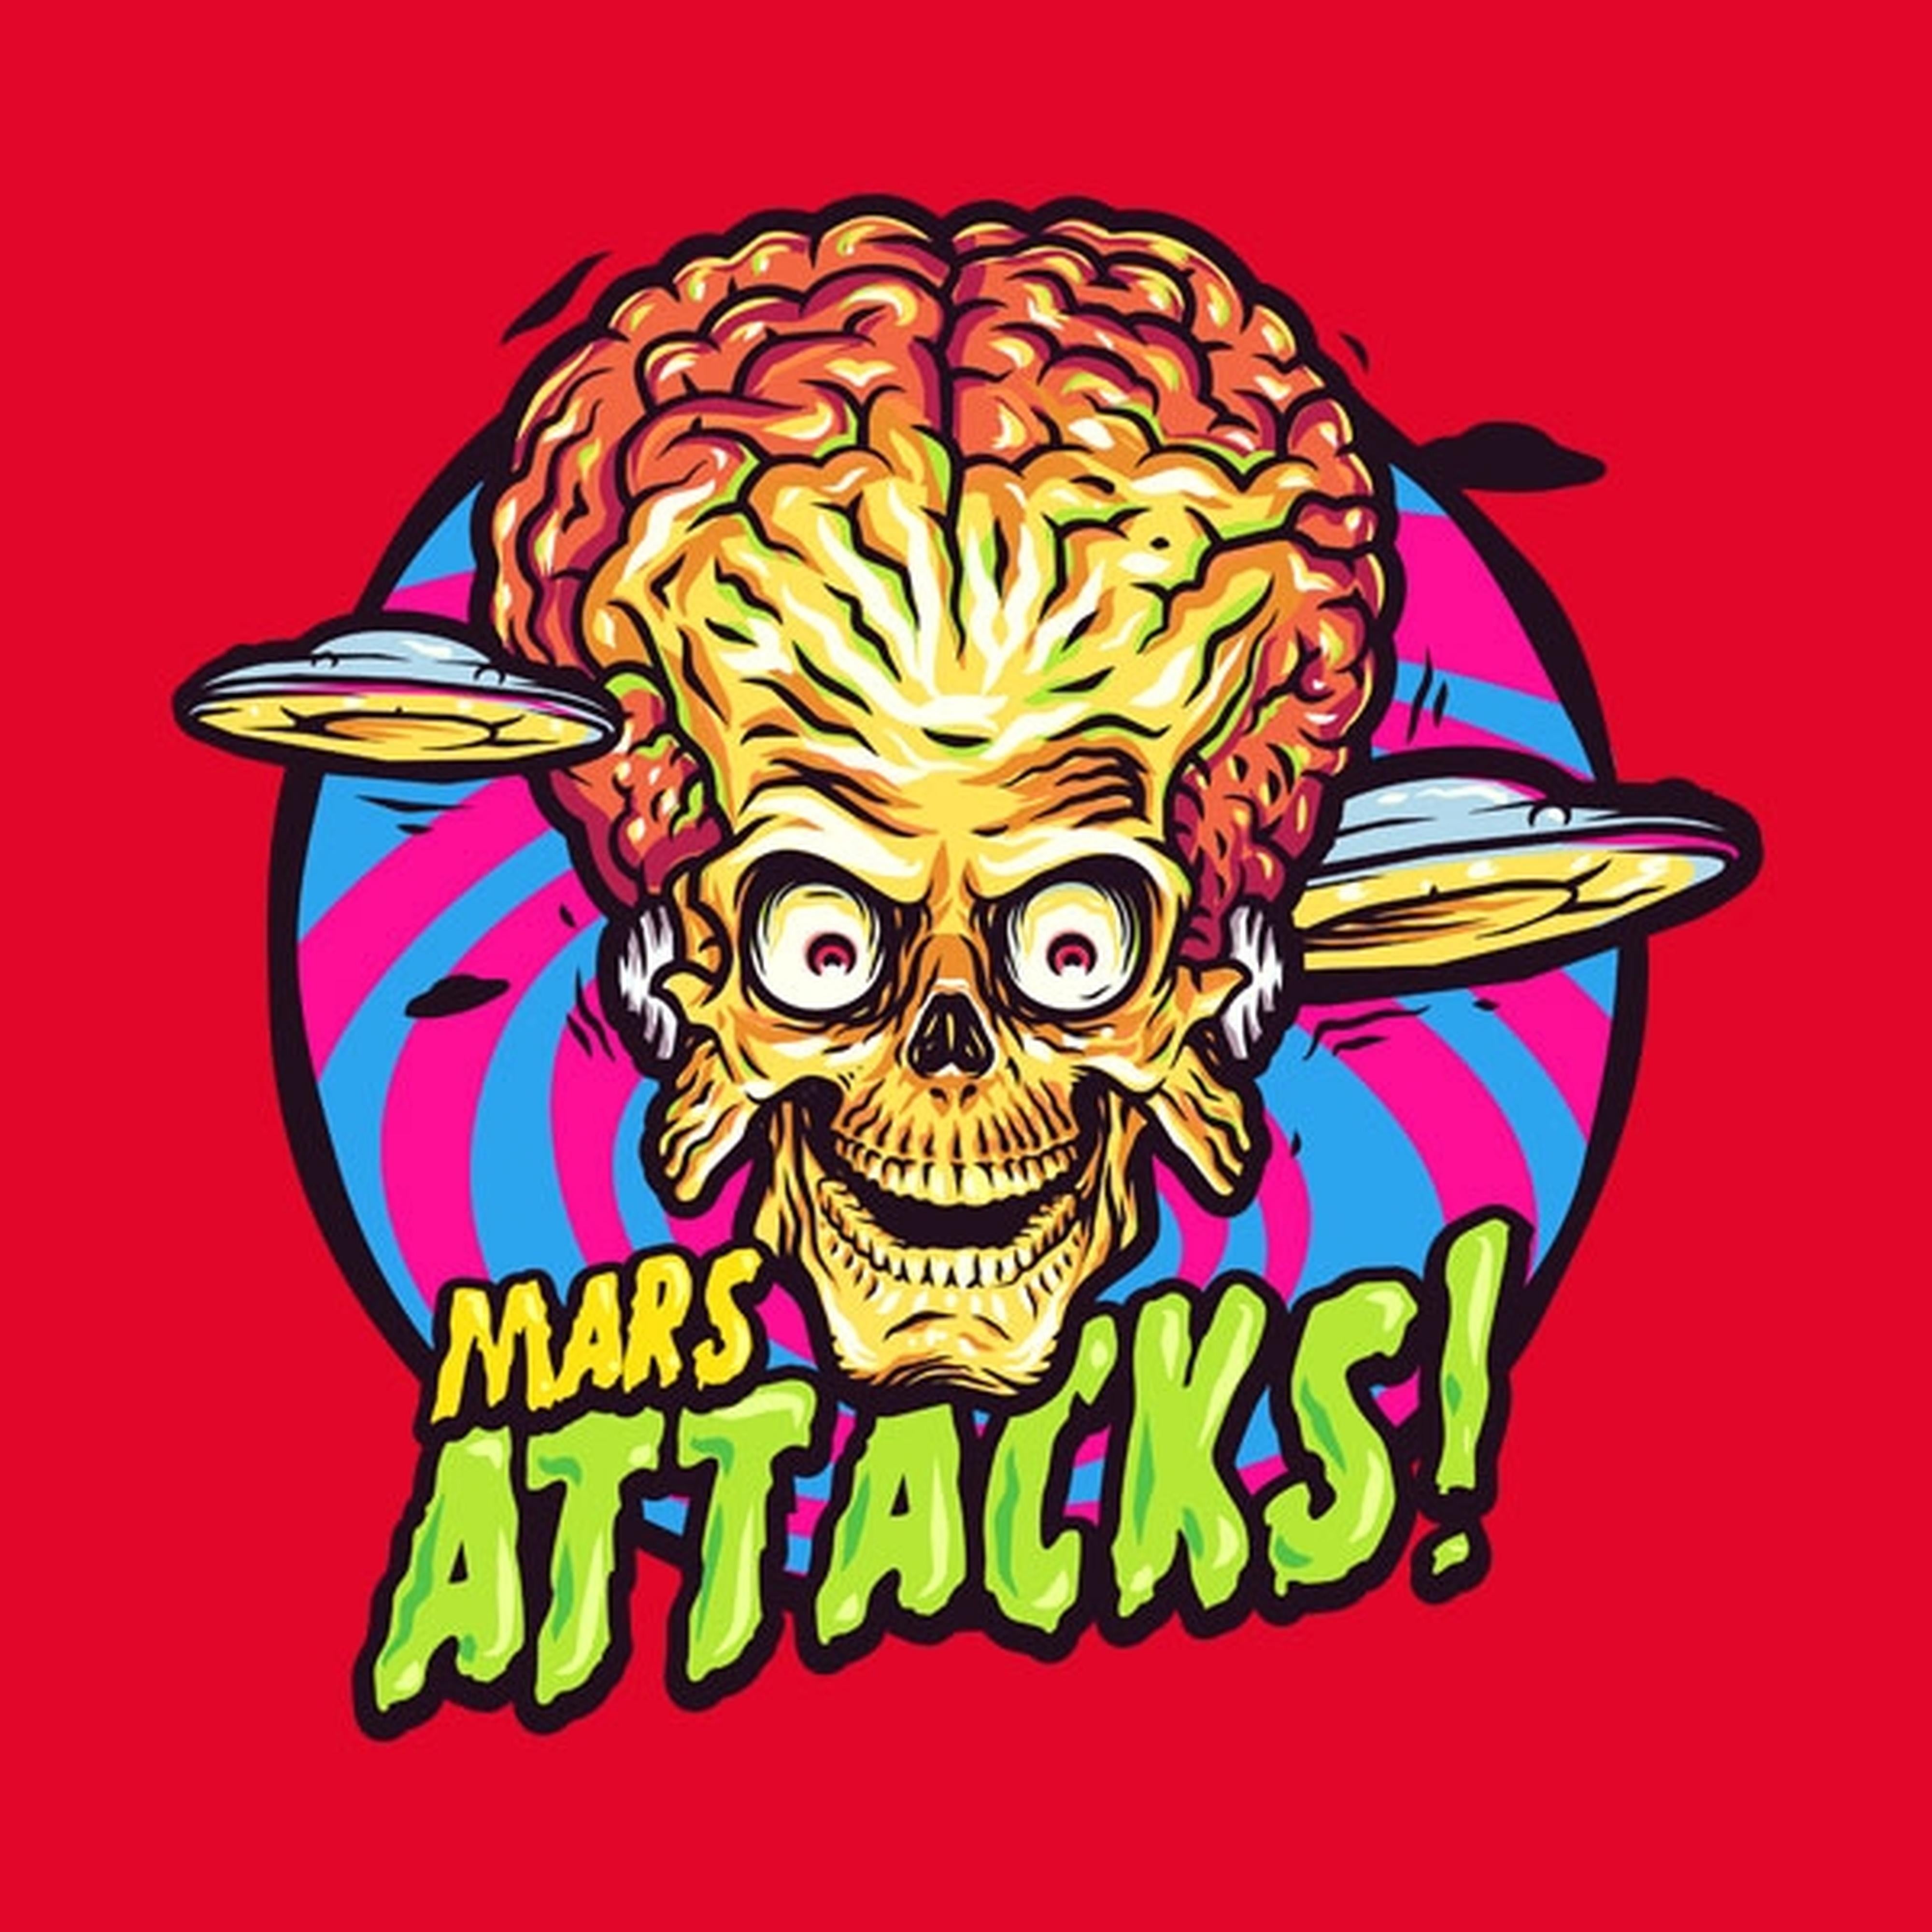 Mars attacks - T-shirt